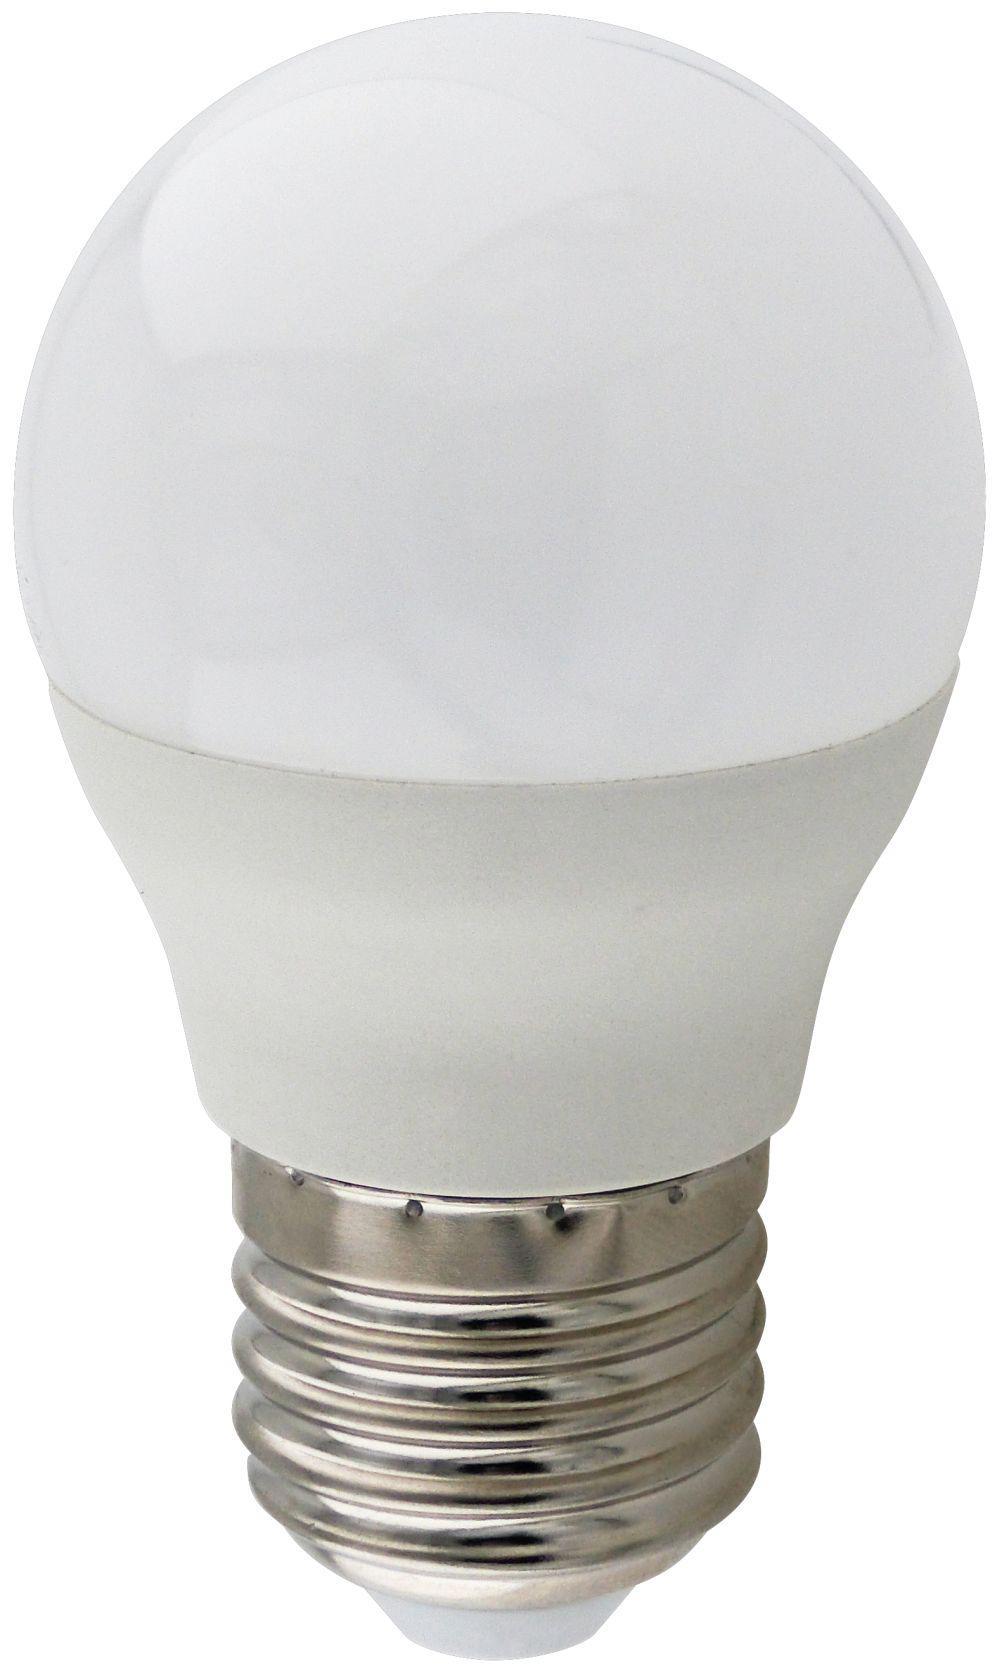 90121406 Лампа Premium светодионая E27 9 Вт шар 810 Лм нейтральный свет STLM-0112530 ECOLA